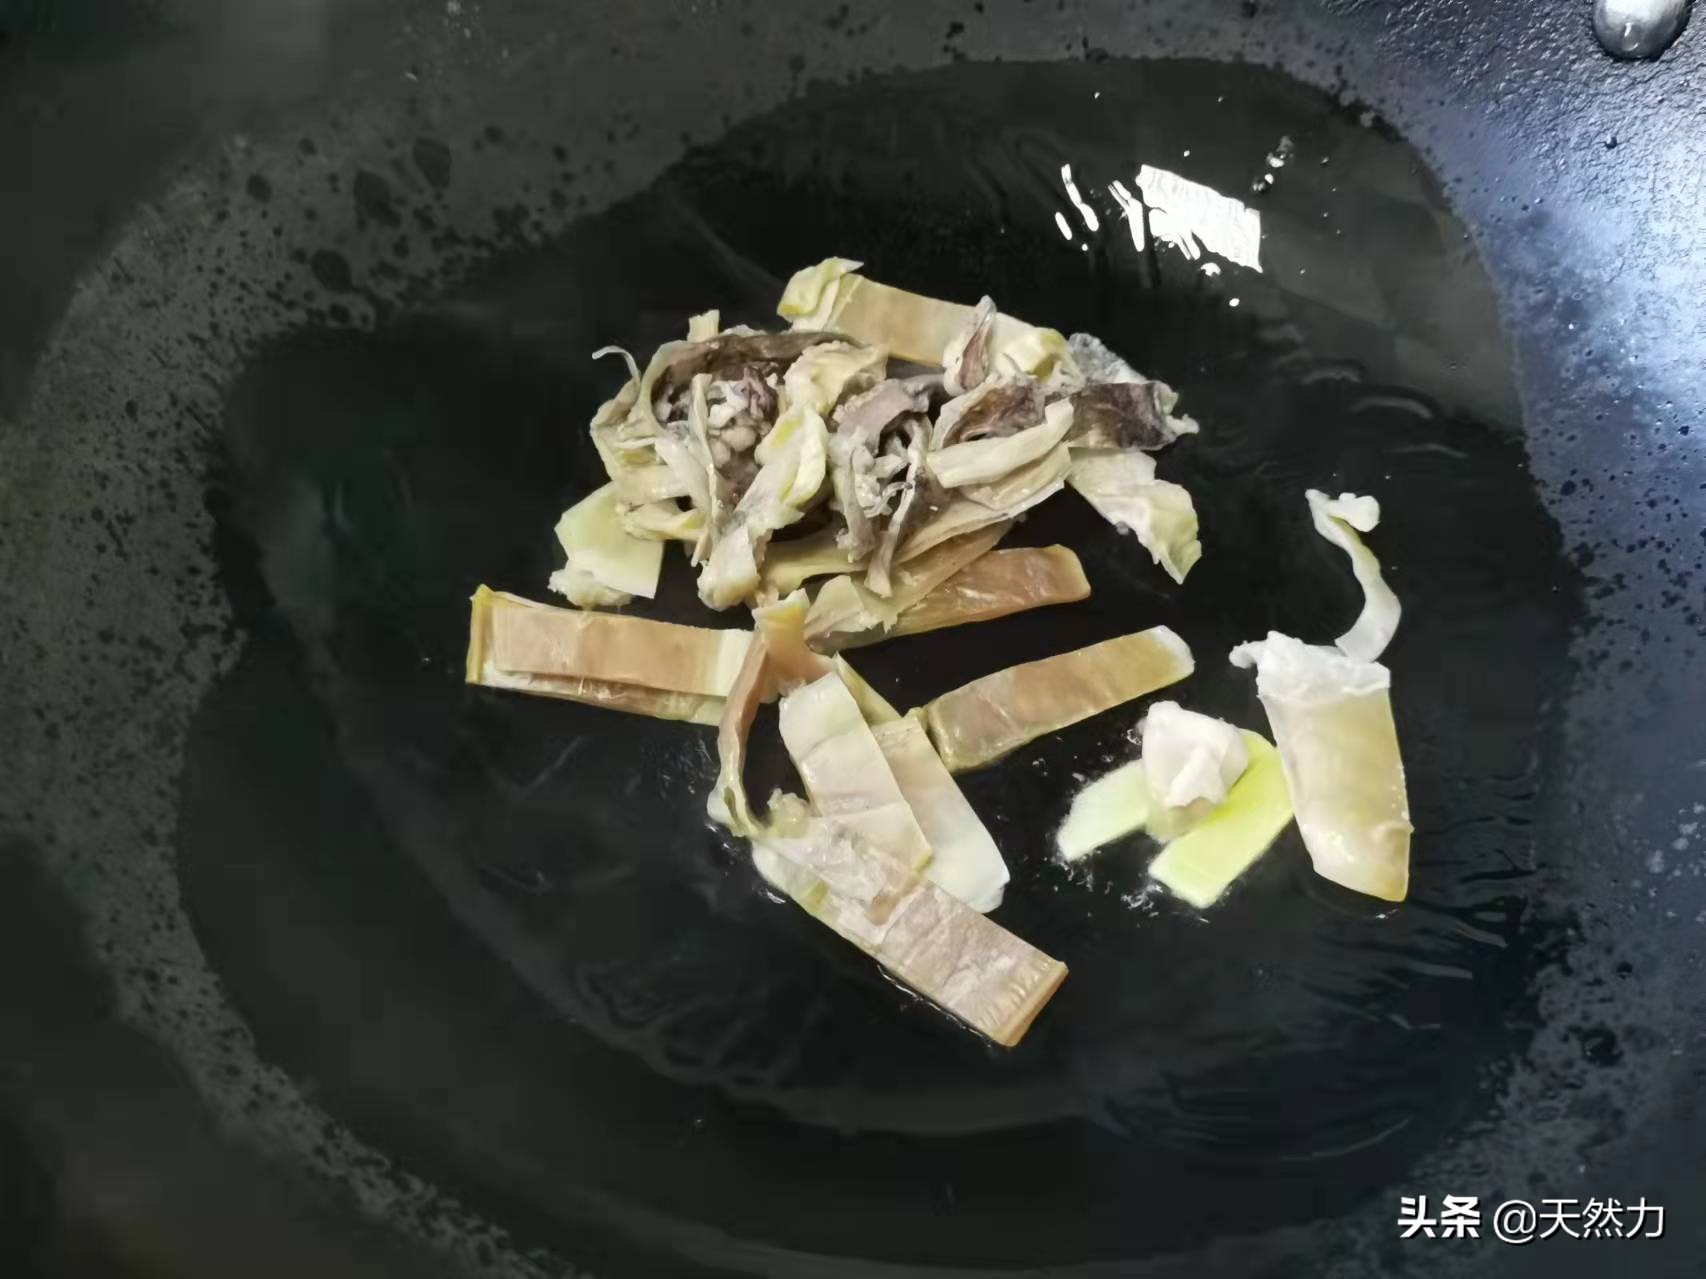 广东家常老火靓汤之花生排骨墨鱼汤，做法简单，适合美女滋补的汤